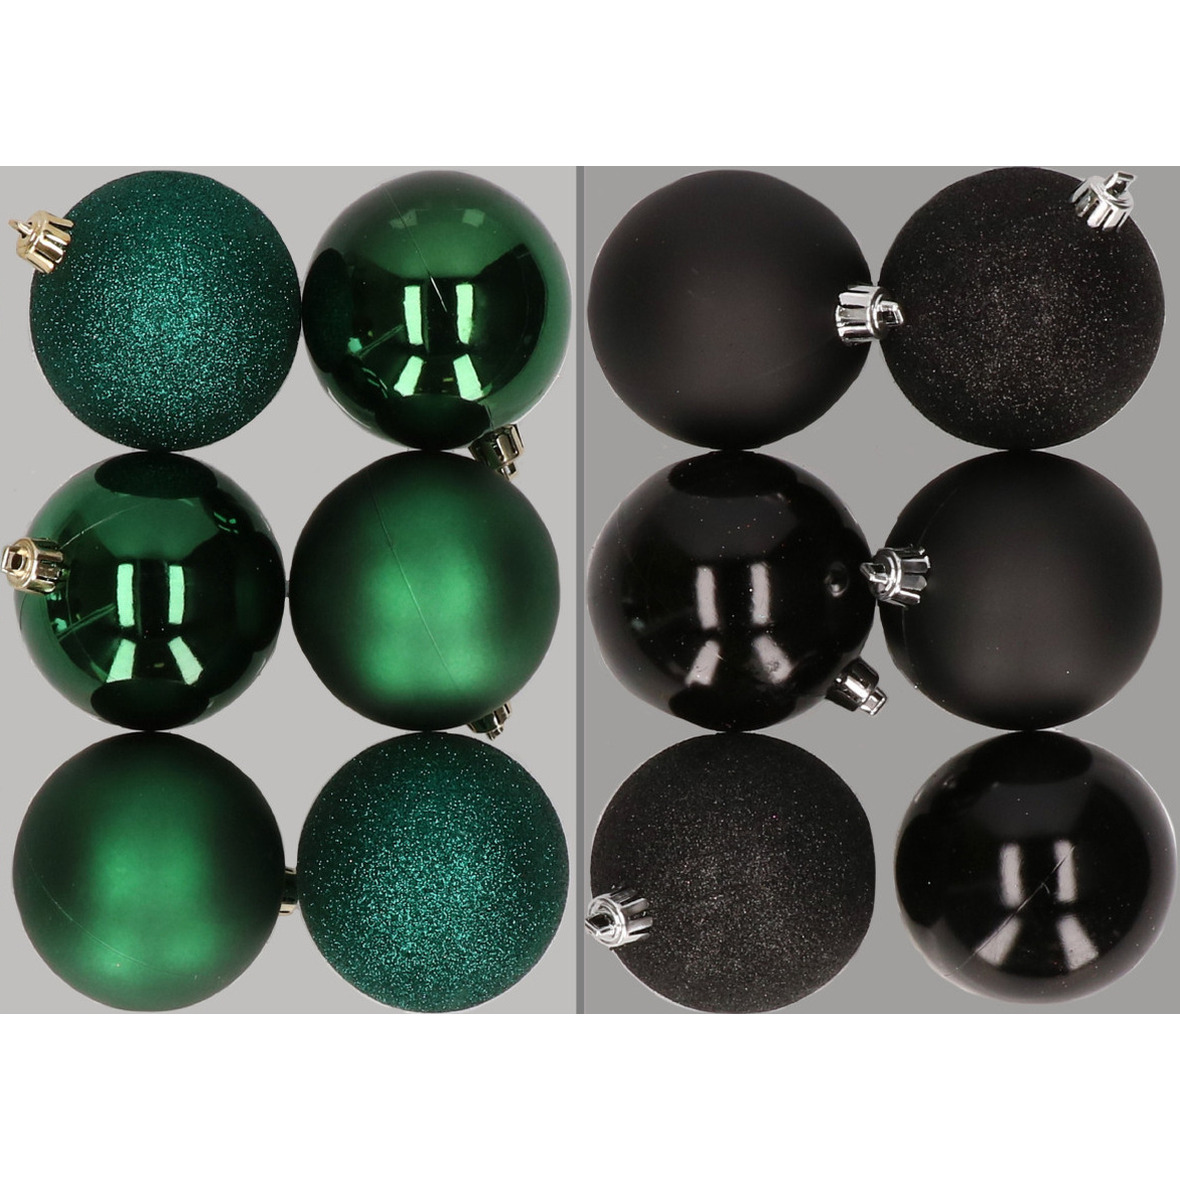 12x stuks kunststof kerstballen mix van donkergroen en zwart 8 cm